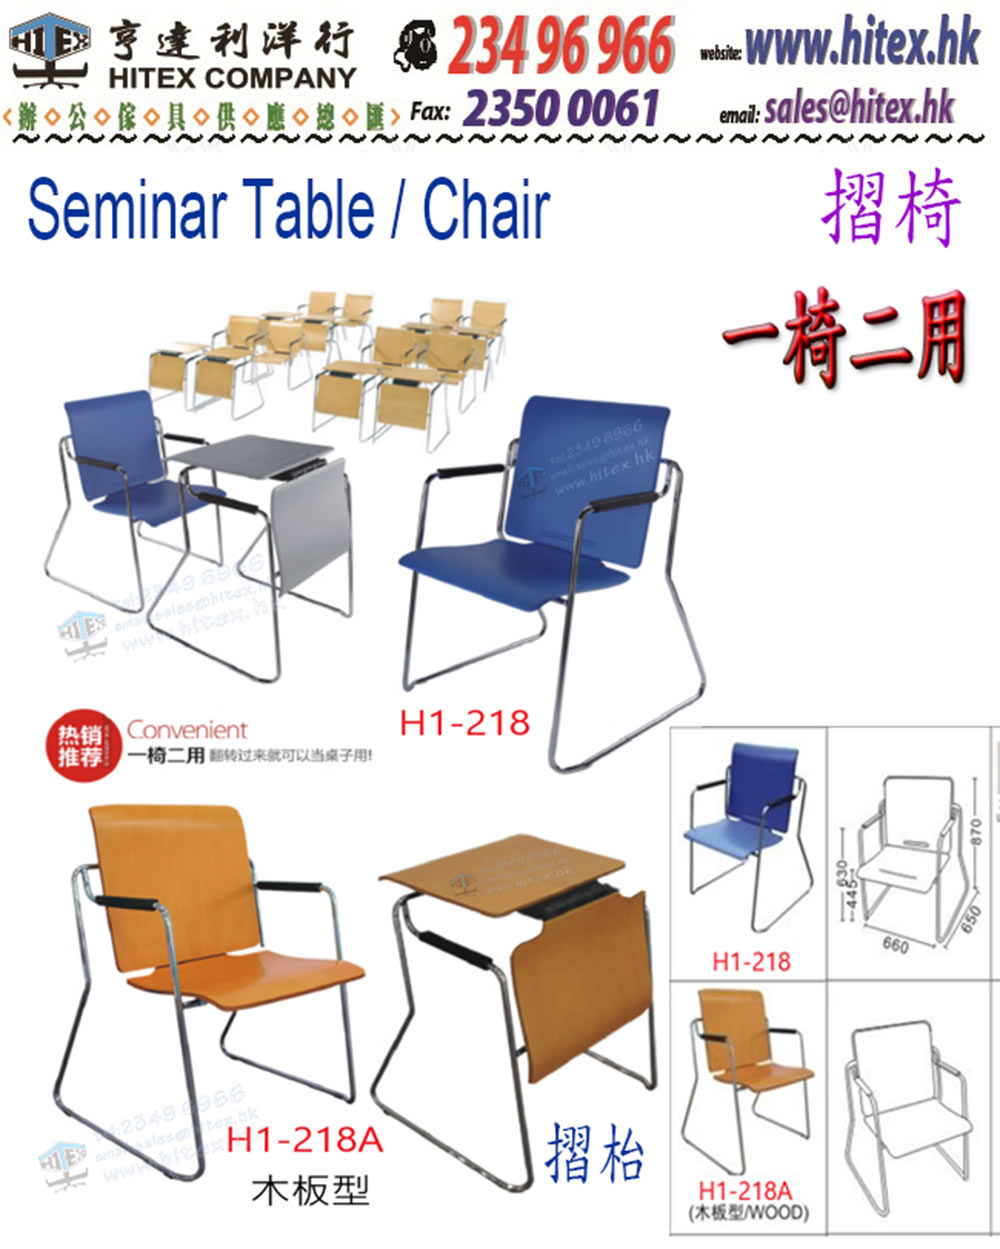 seminar-chair-h1-218.jpg